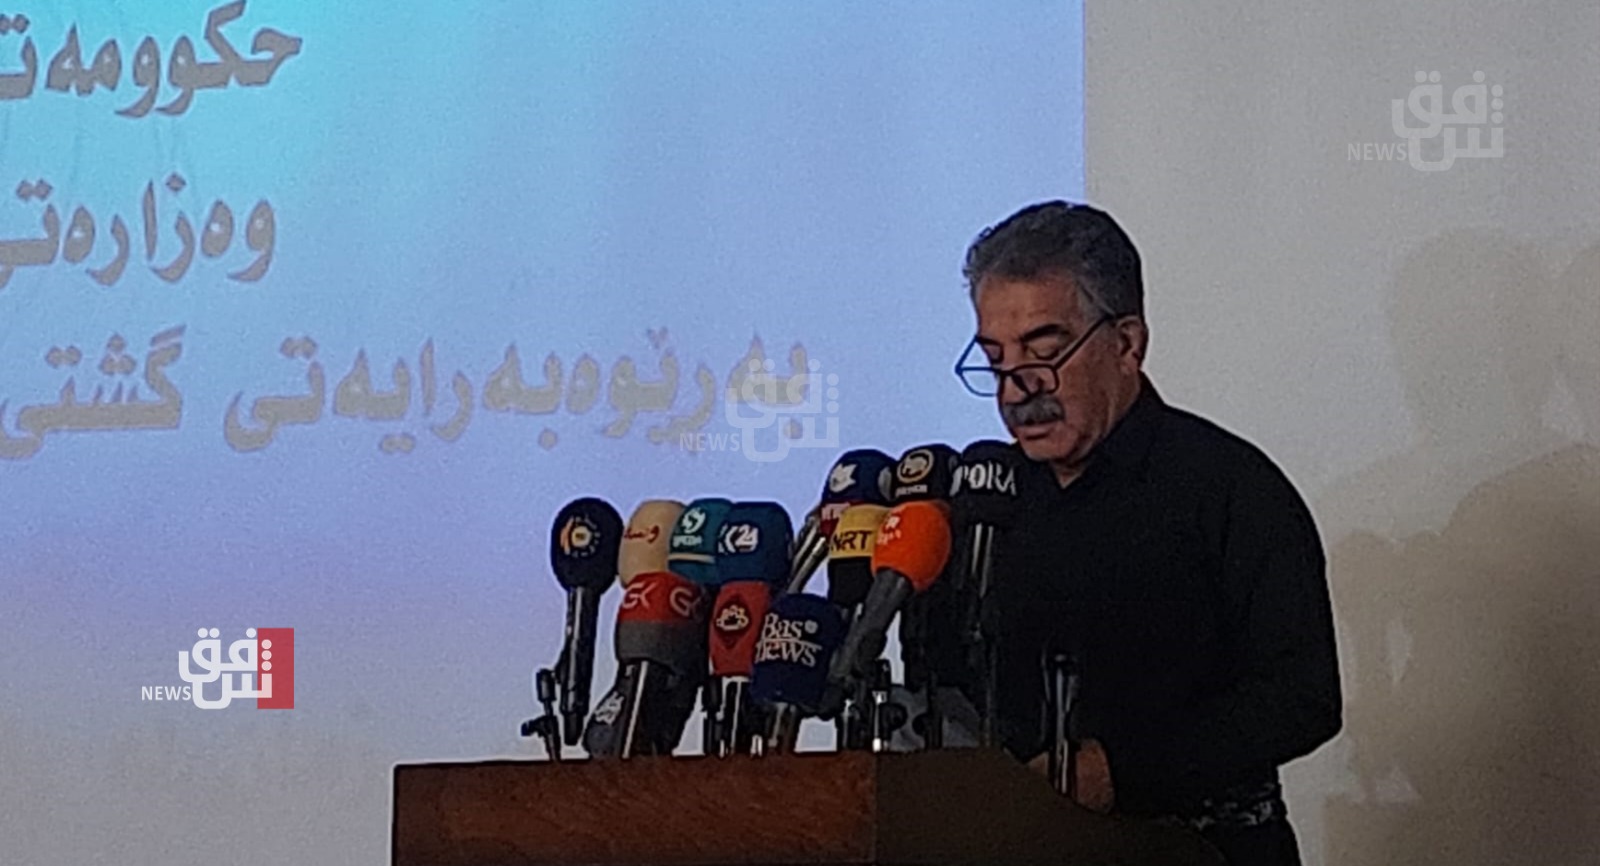 وزير الثقافة الكوردستاني يأسف لعدم تطبيق "قانون اللغات" في العراق والإقليم ويعلن تحمله المسؤولية